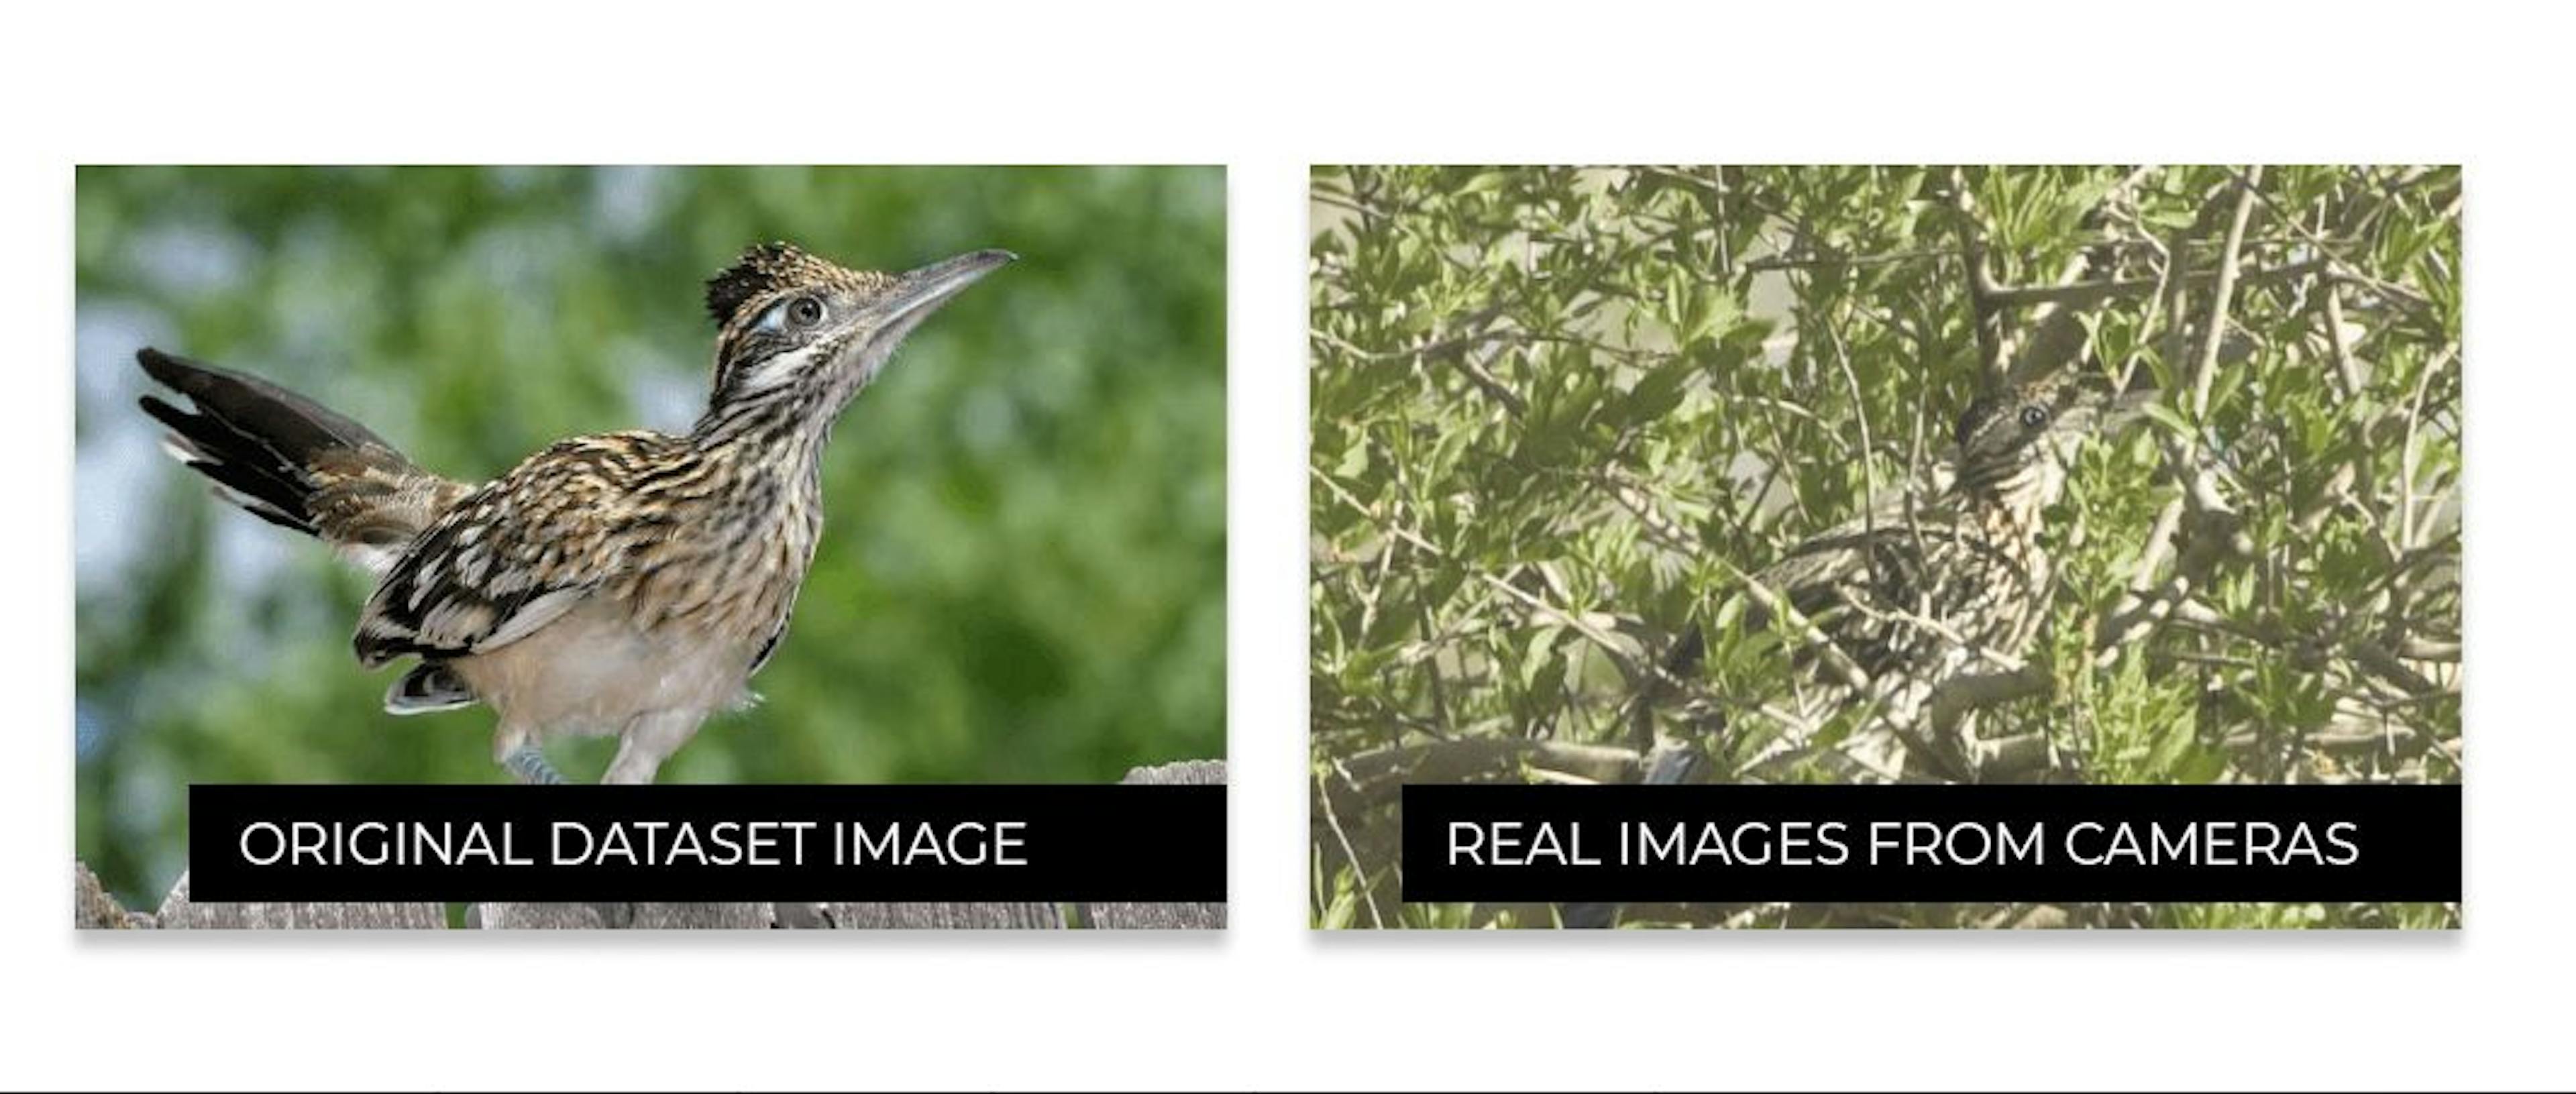 La diferencia entre cómo se ven los pájaros en Internet y cómo se ven en la vida real